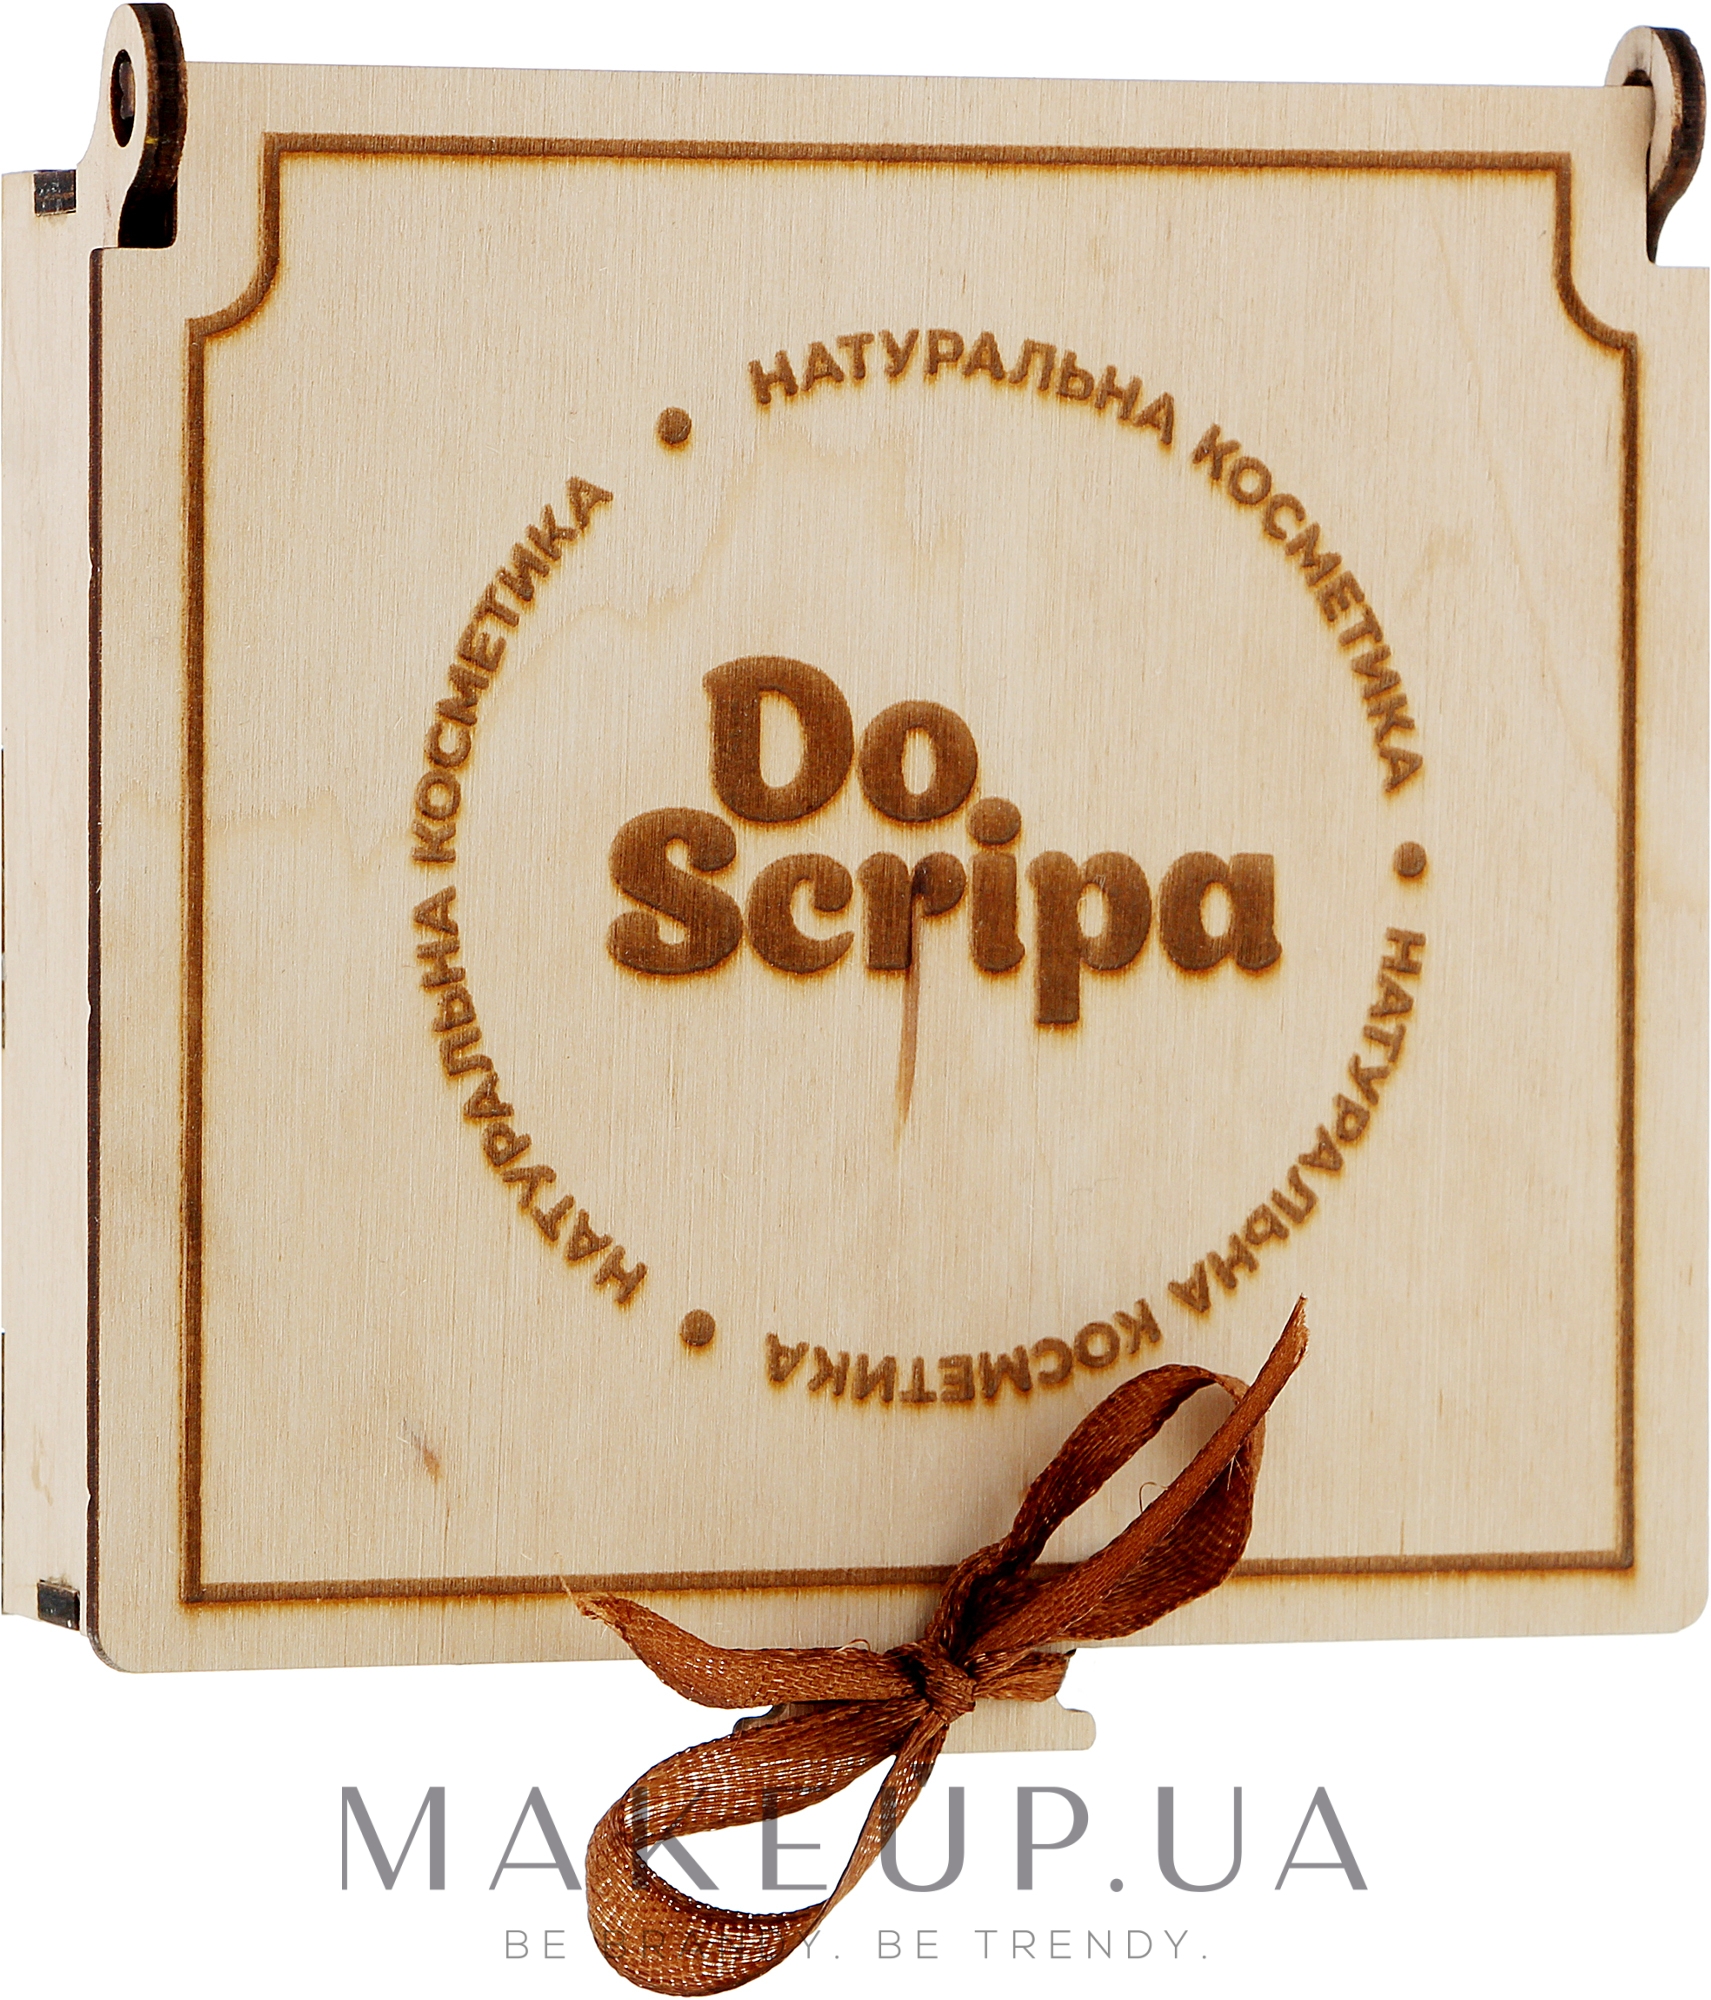 Мыло "Букет ромашек" в подарочной упаковке из дерева - Do Scripa — фото 100g